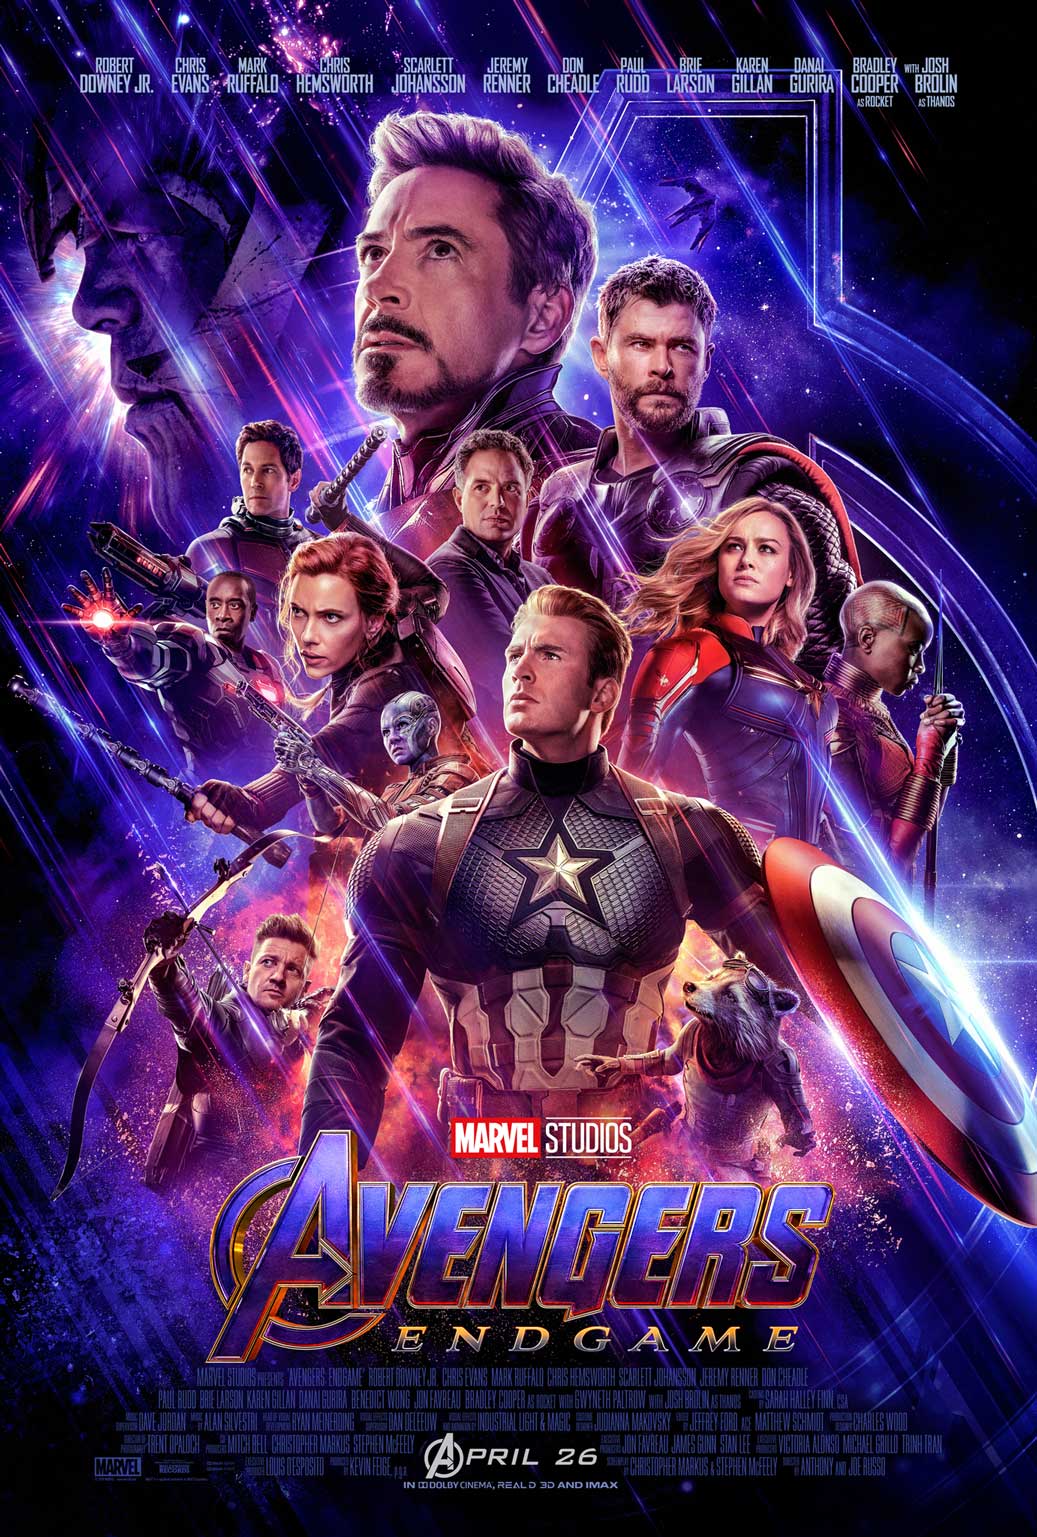 Photo_of_Endgame:_Avengers:_Endgame_poster_2019